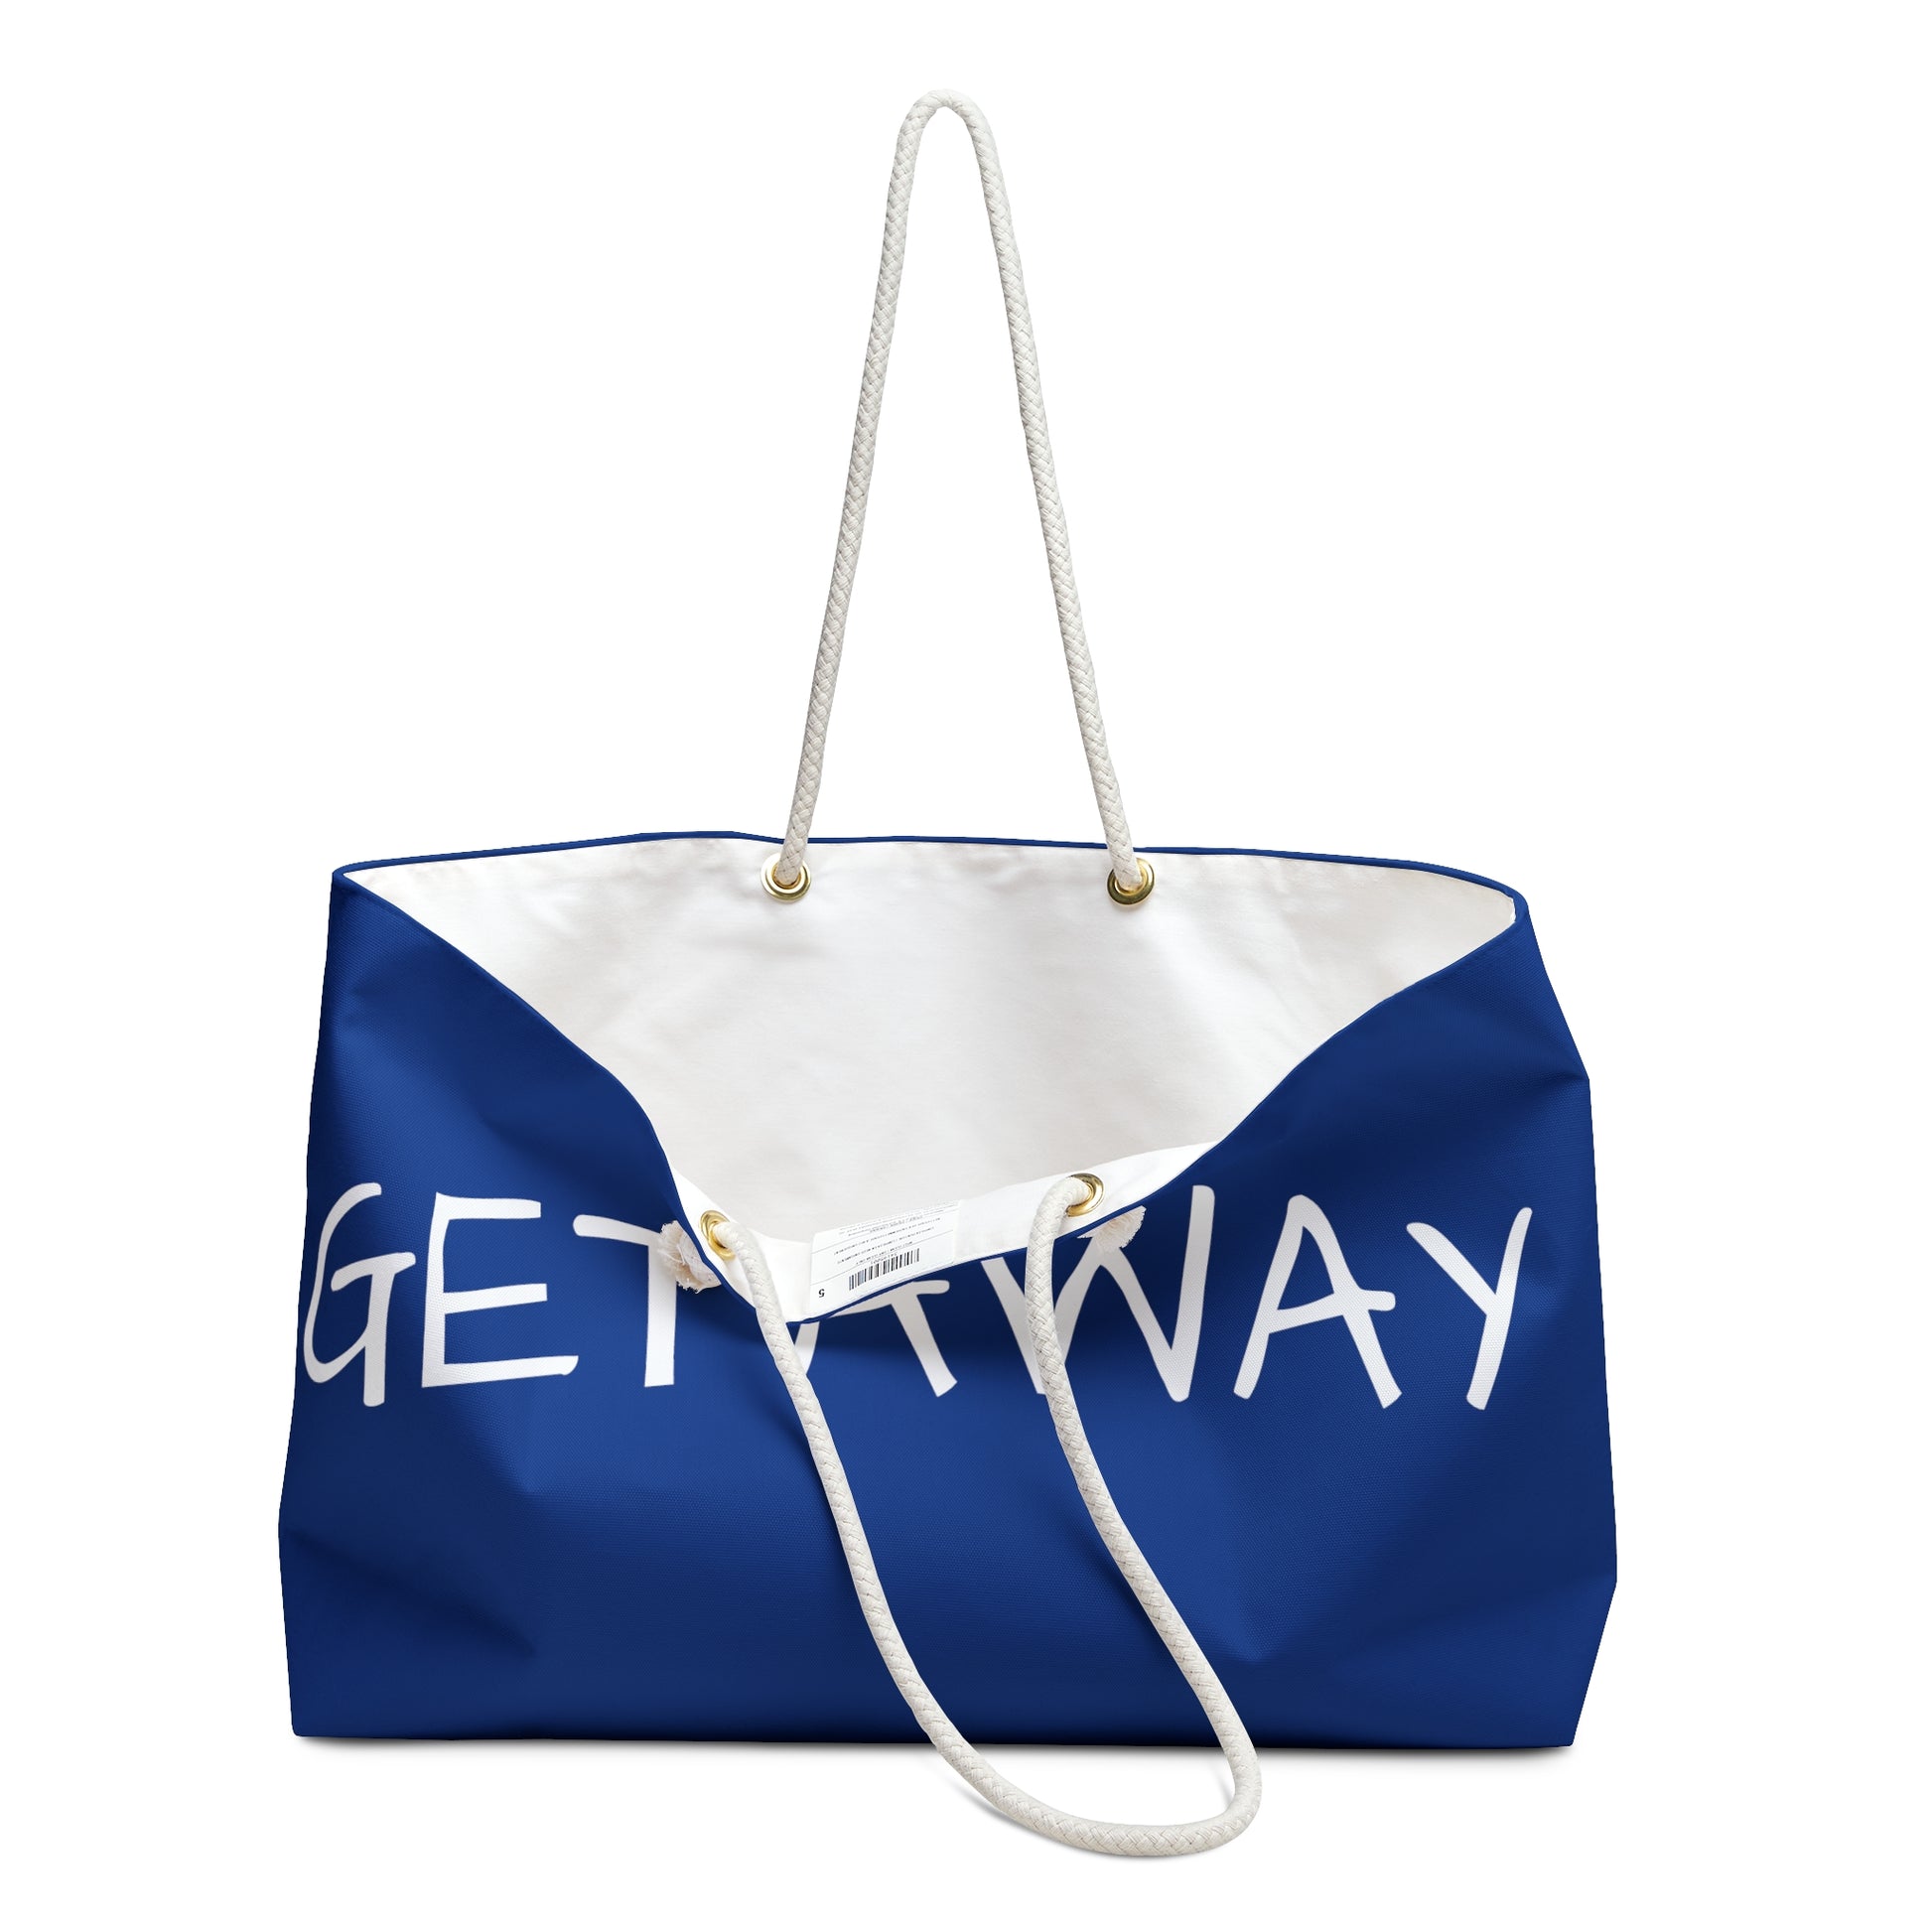 Weekender Tote Bag - Getaway handles